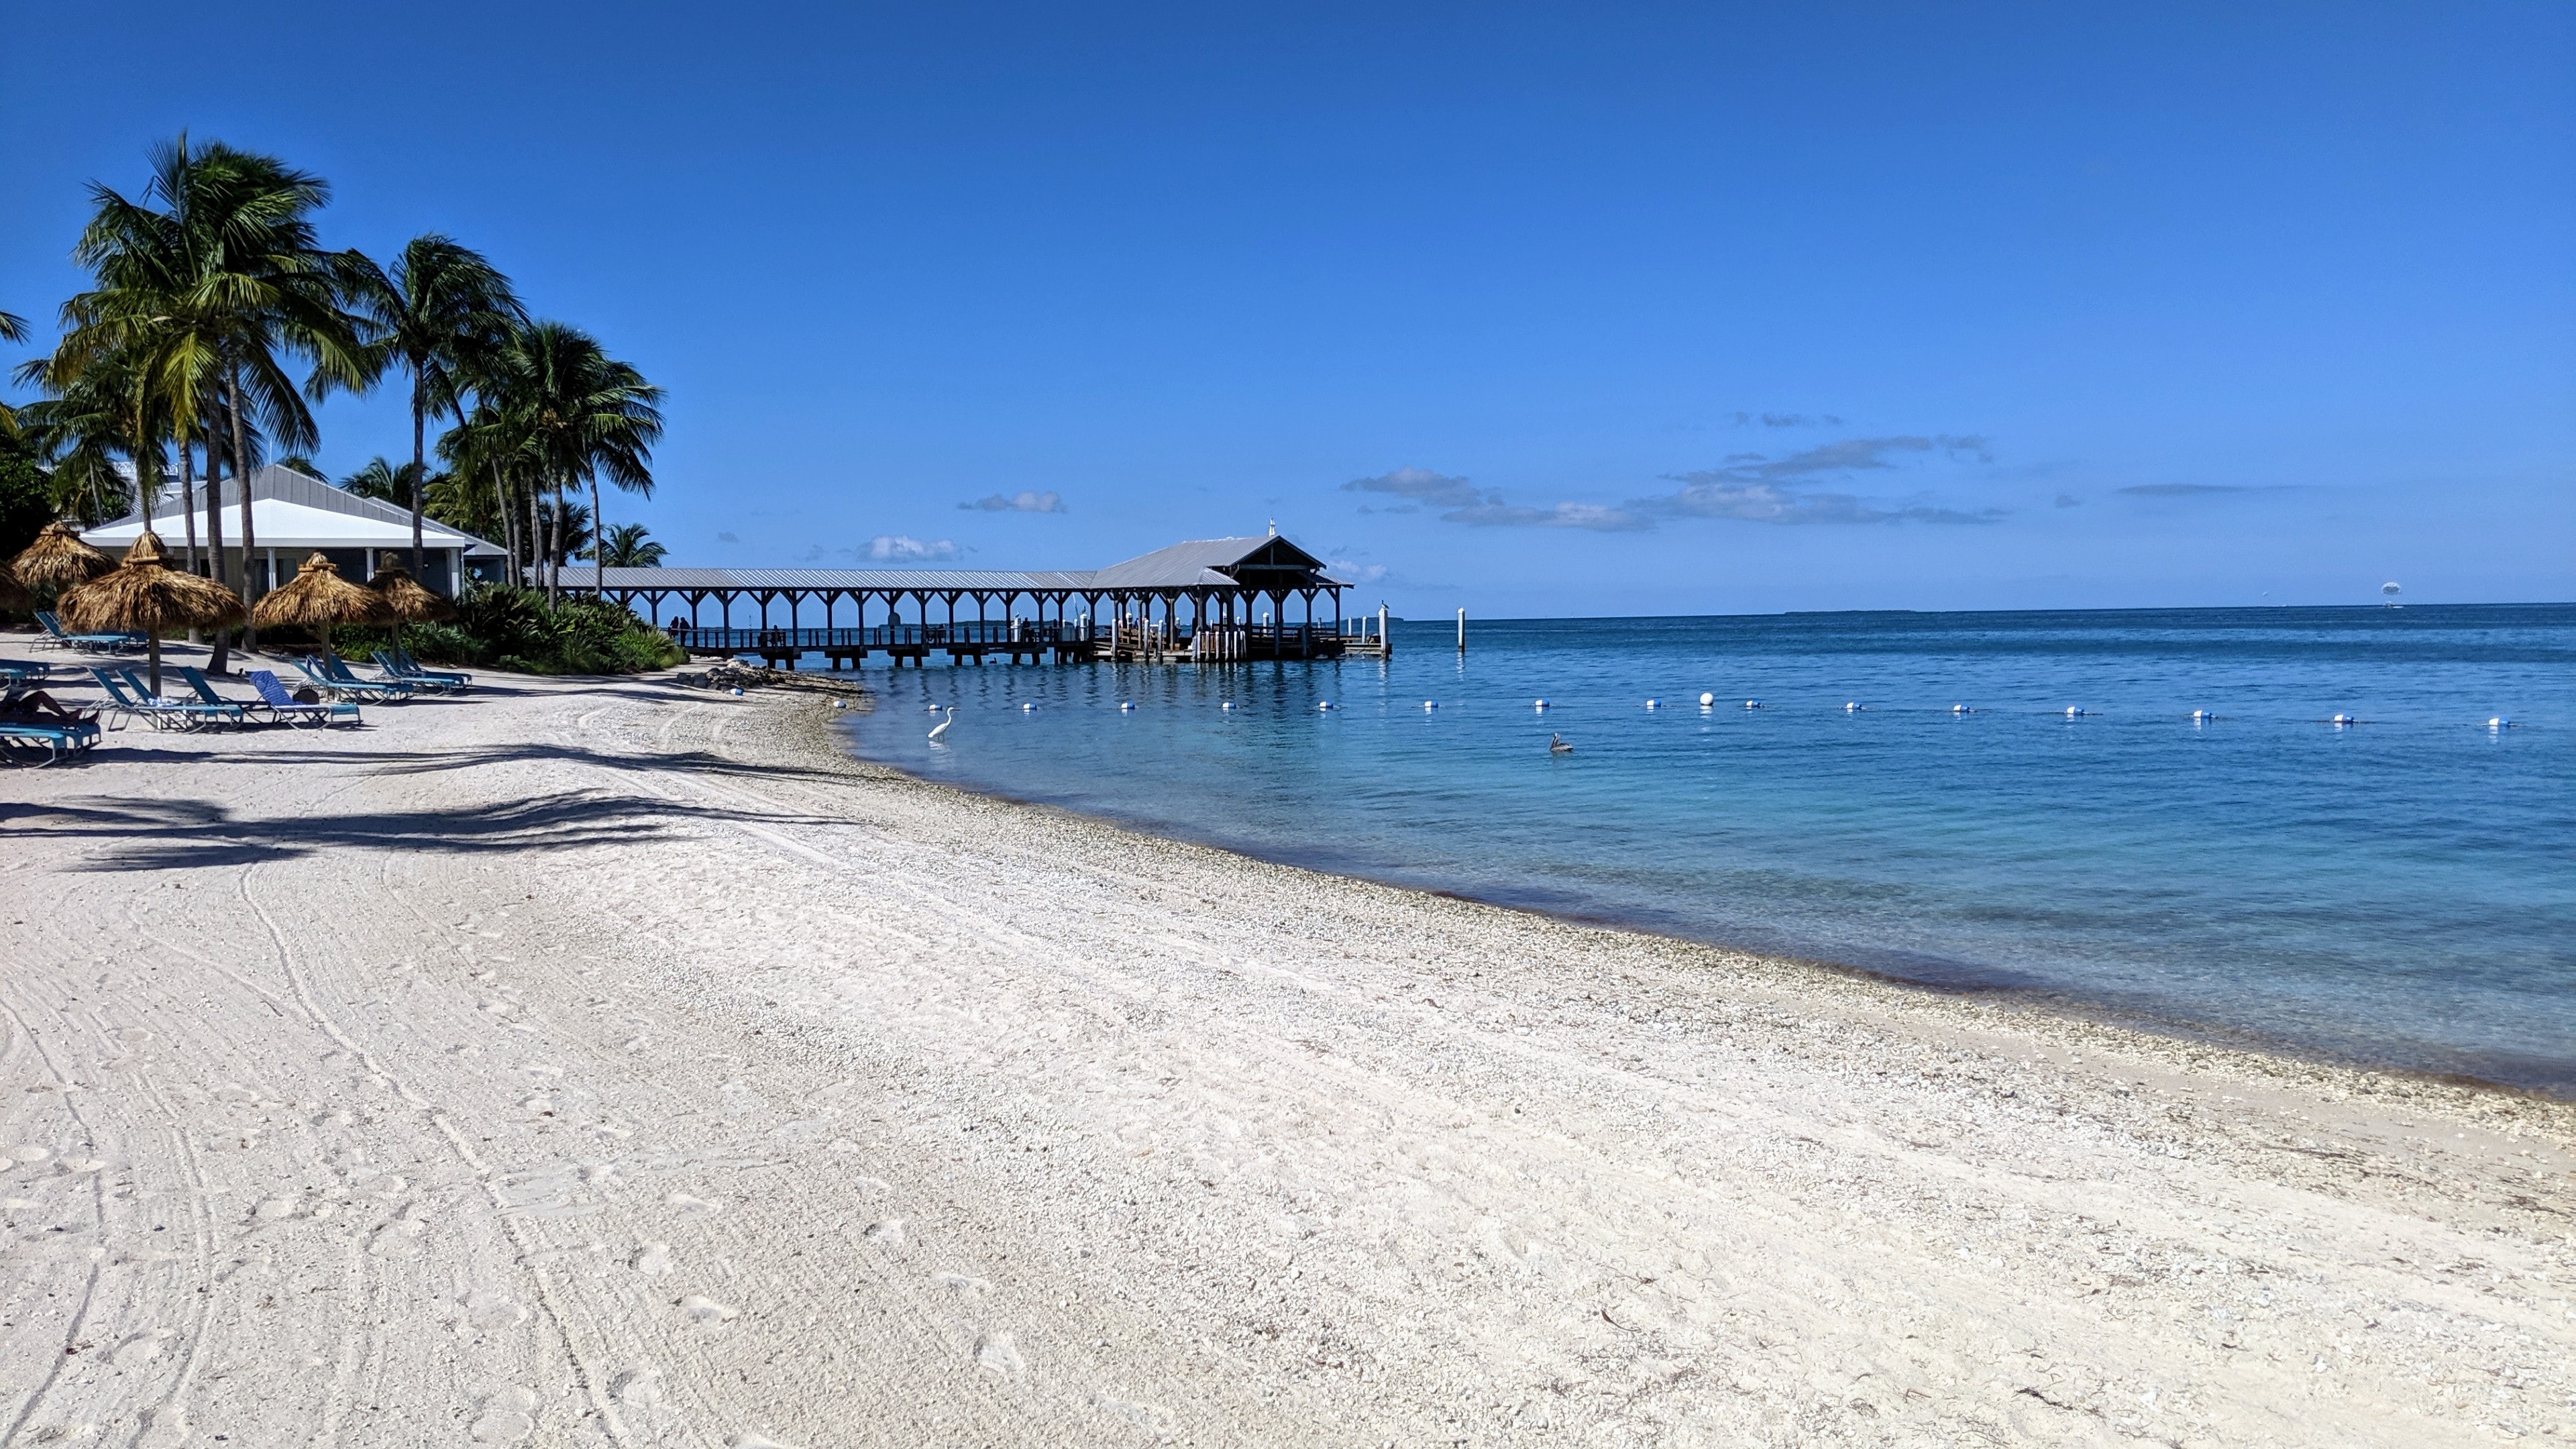 Key West travels, Florida Keys honeymoon, Caribbean vibes, 3840x2160 4K Desktop